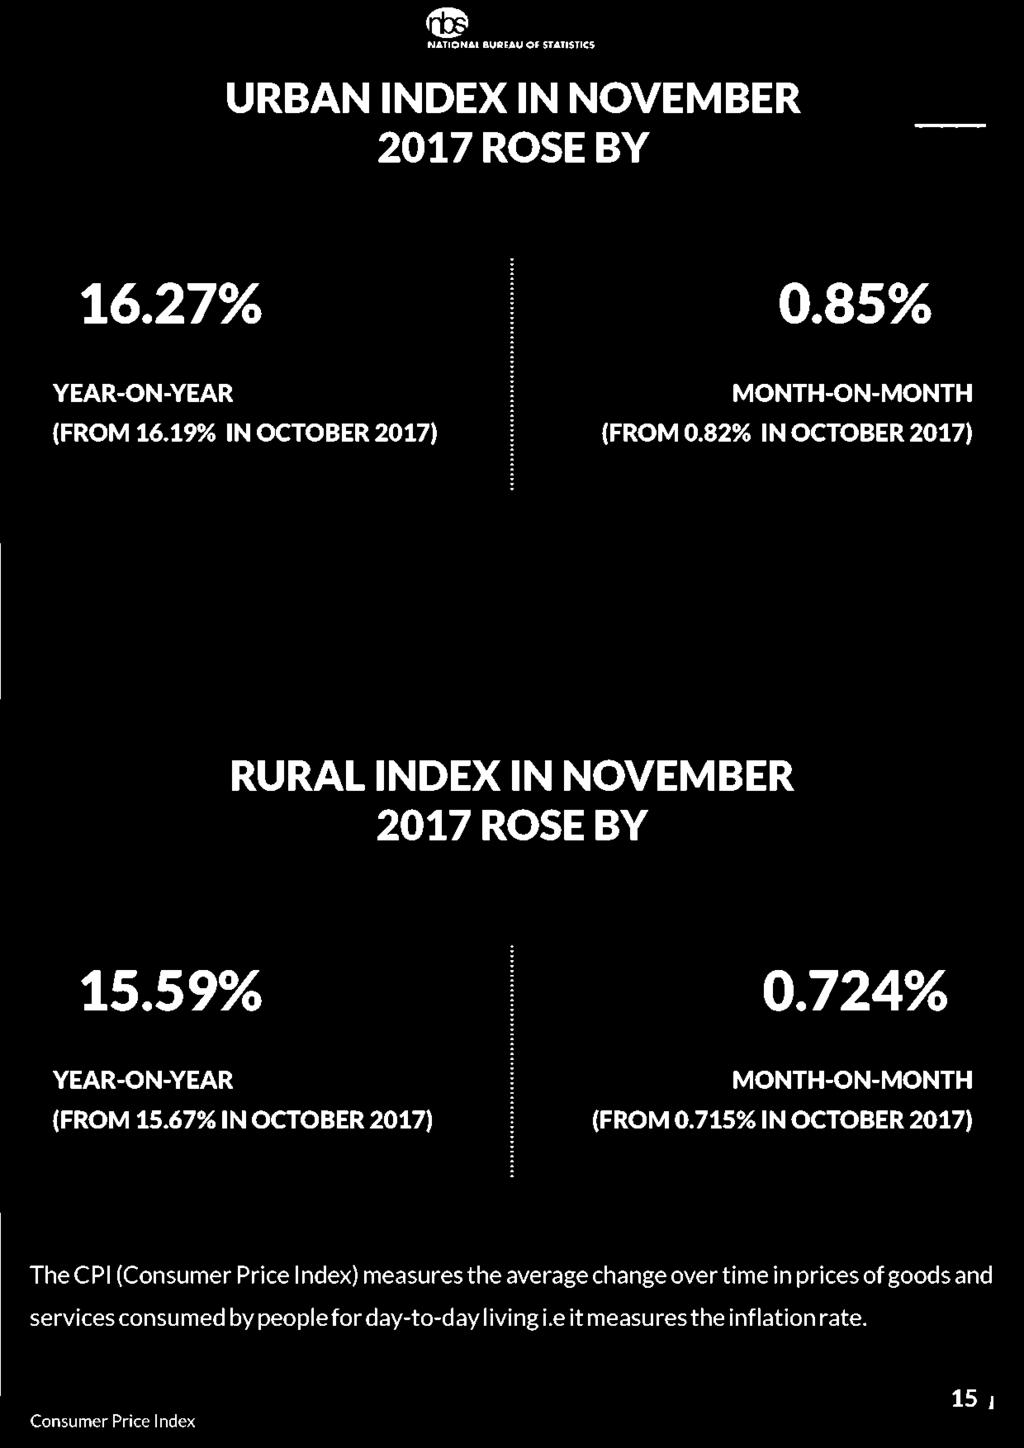 82% IN OCTOBER 2017) RURAL INDEX IN NOVEMBER